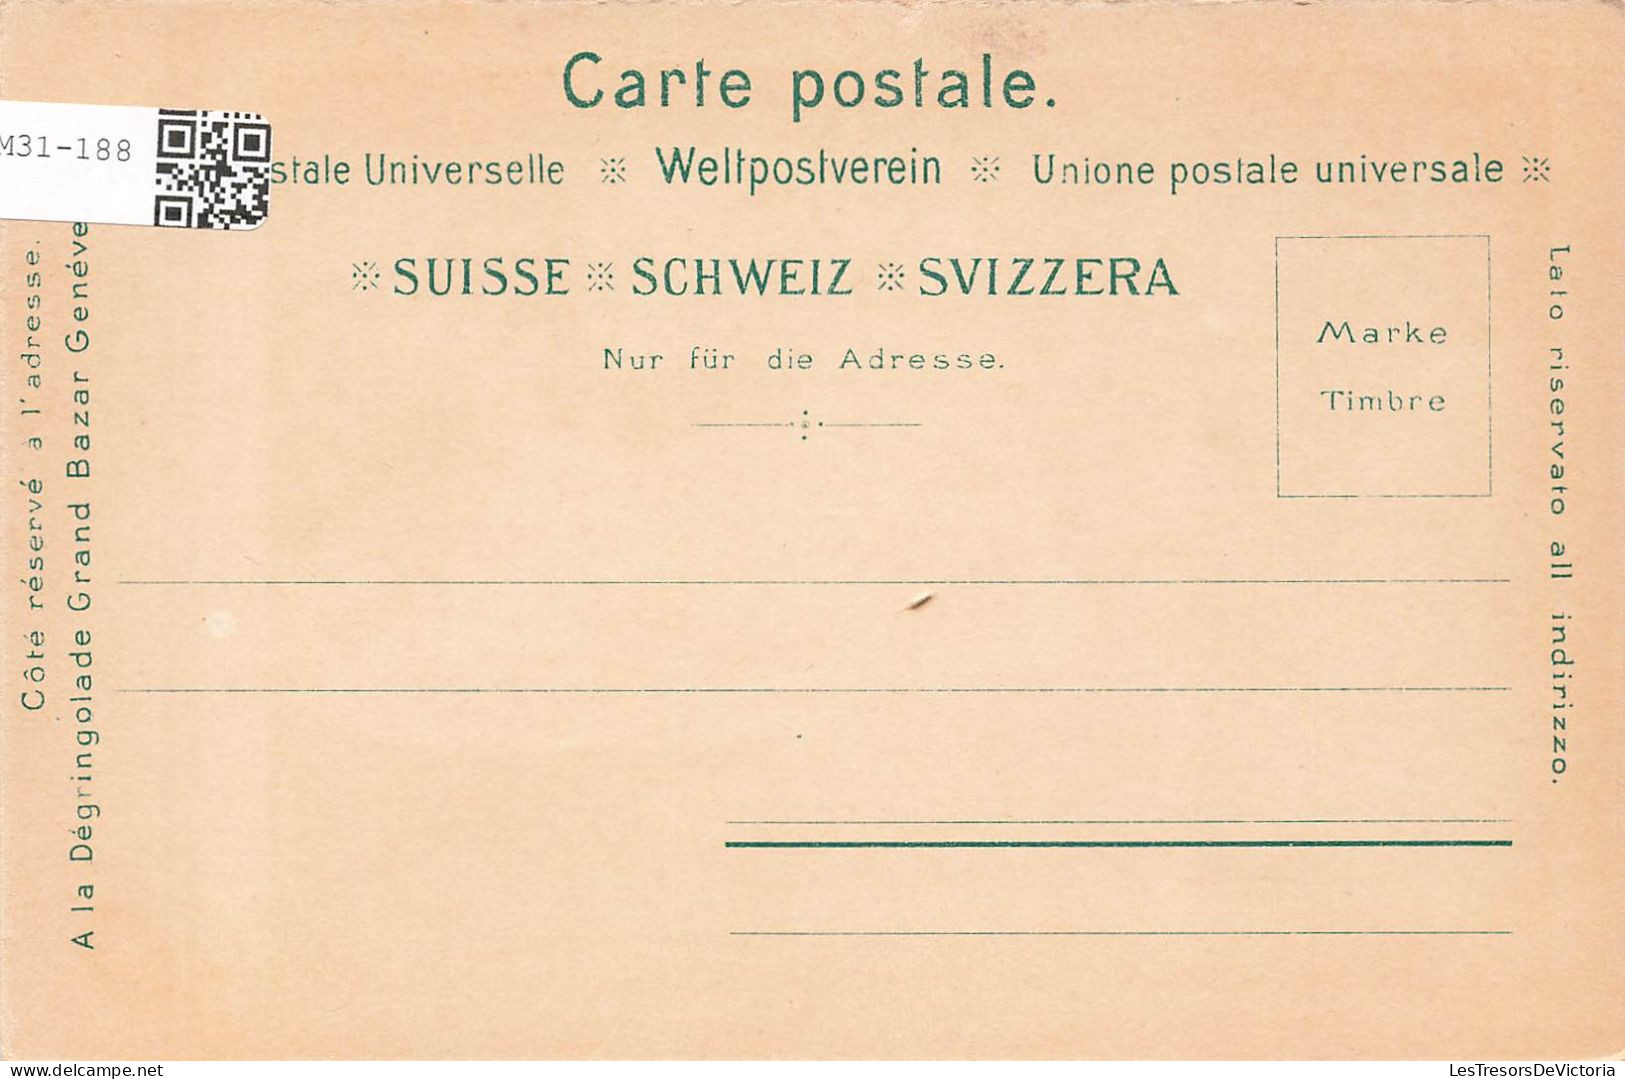 FOLKLORE - Suisse - Costume - Graubünden - Couple En Costume Traditionnel - Colorisé - Carte Postale Ancienne - Vestuarios